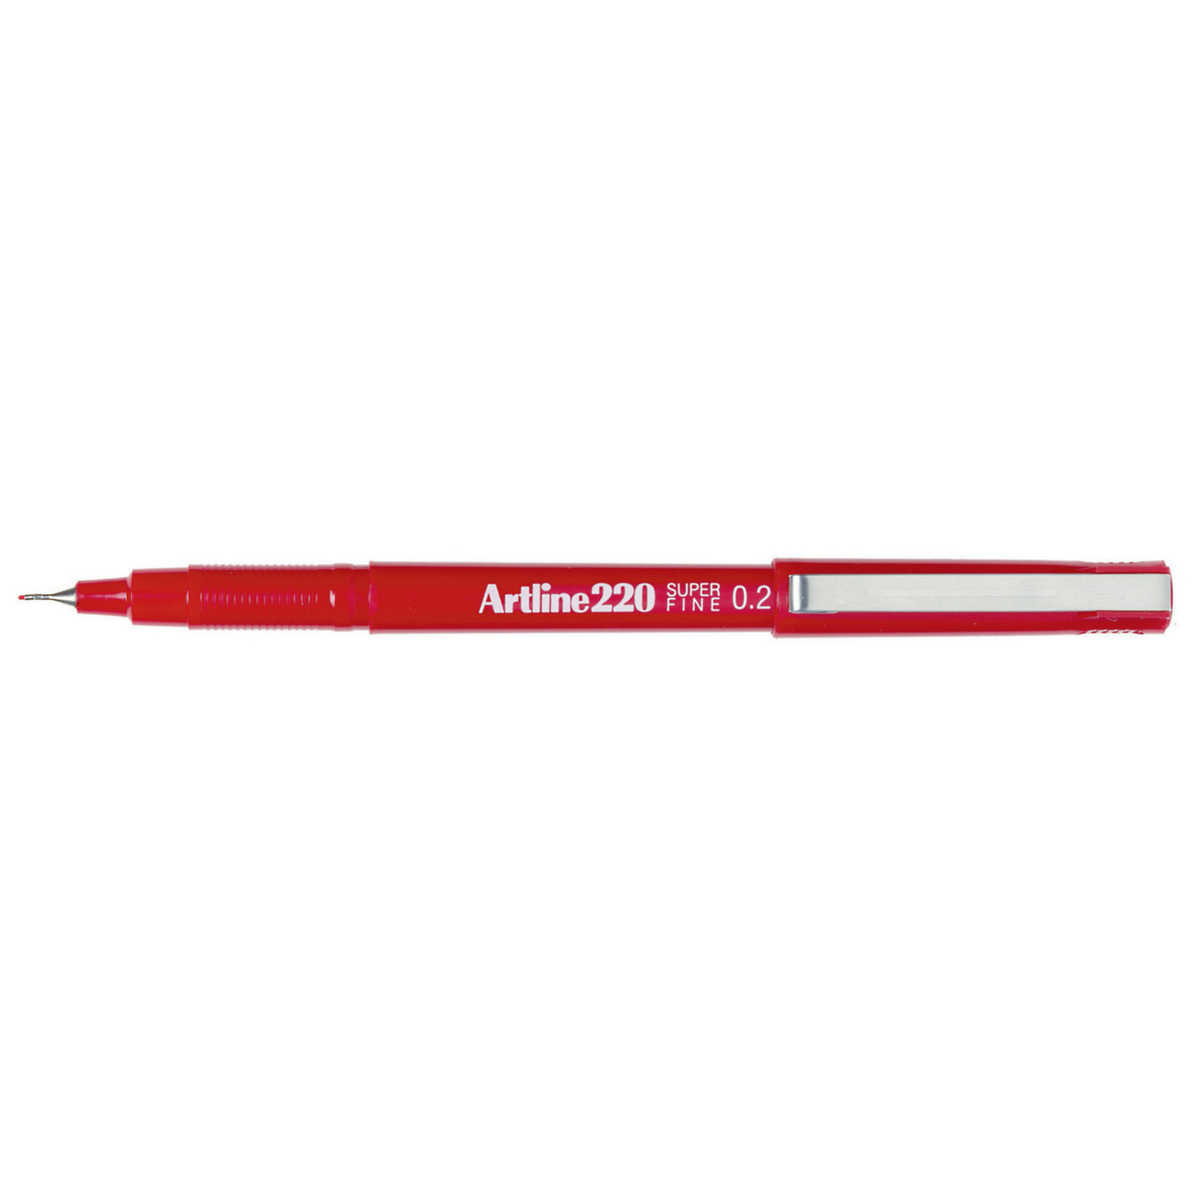 Pen Artline 220 Fineliner 0.2mm Red (FS)